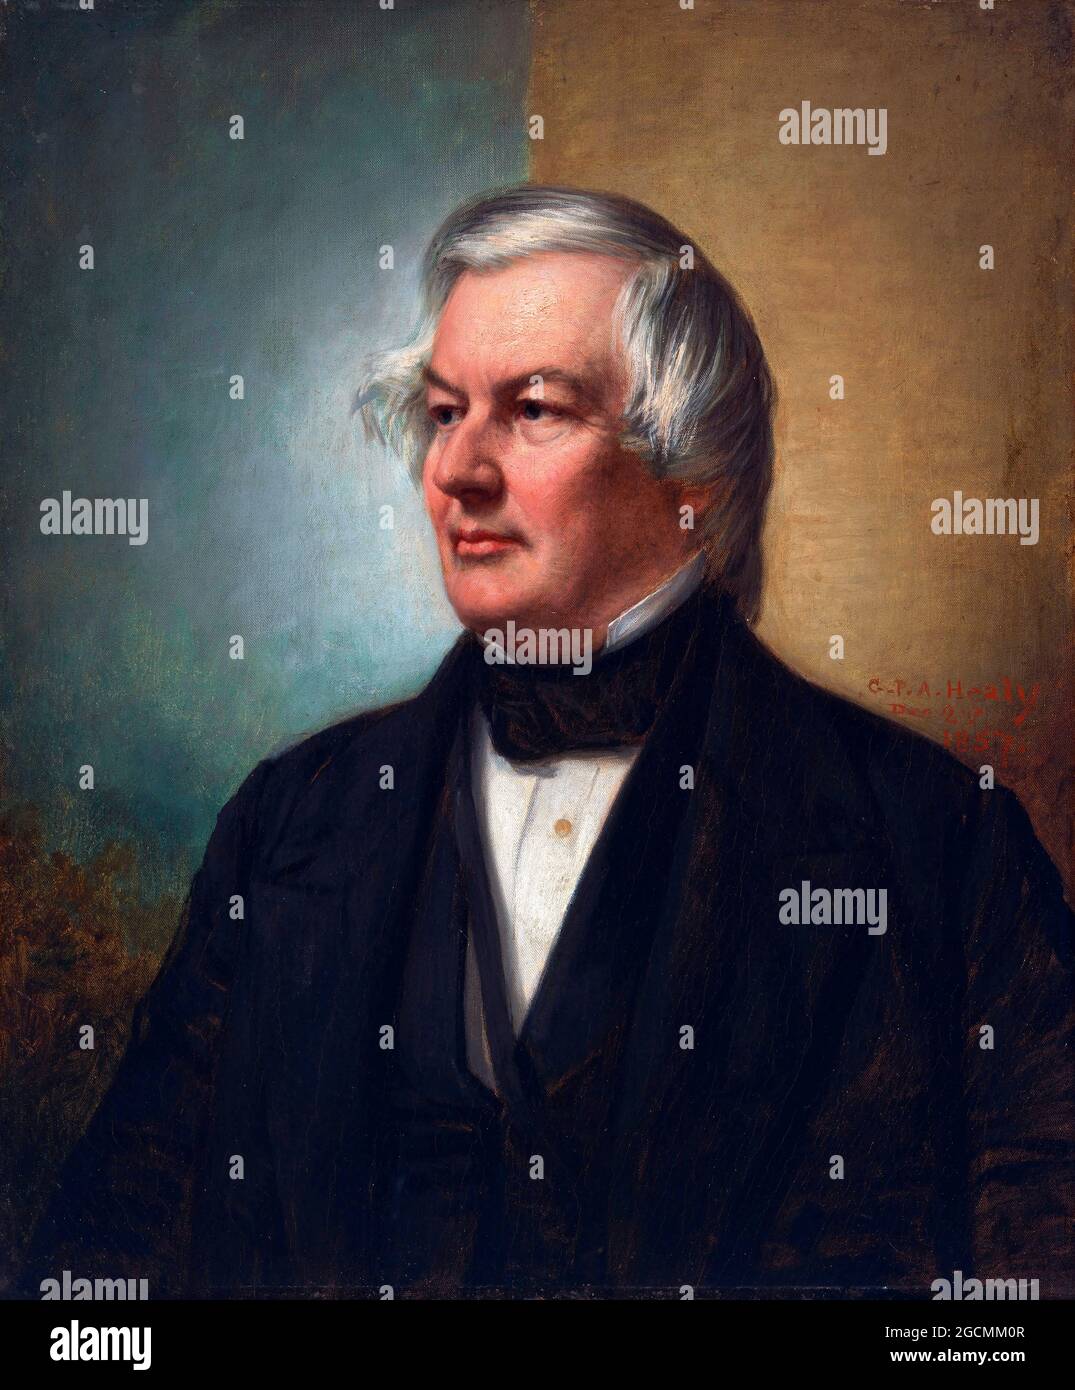 Millard Fillmore. Portrait du 13ème président américain Millard Fillmore (1800-1874) par George Peter Alexander Healy, huile sur toile, 1857 Banque D'Images